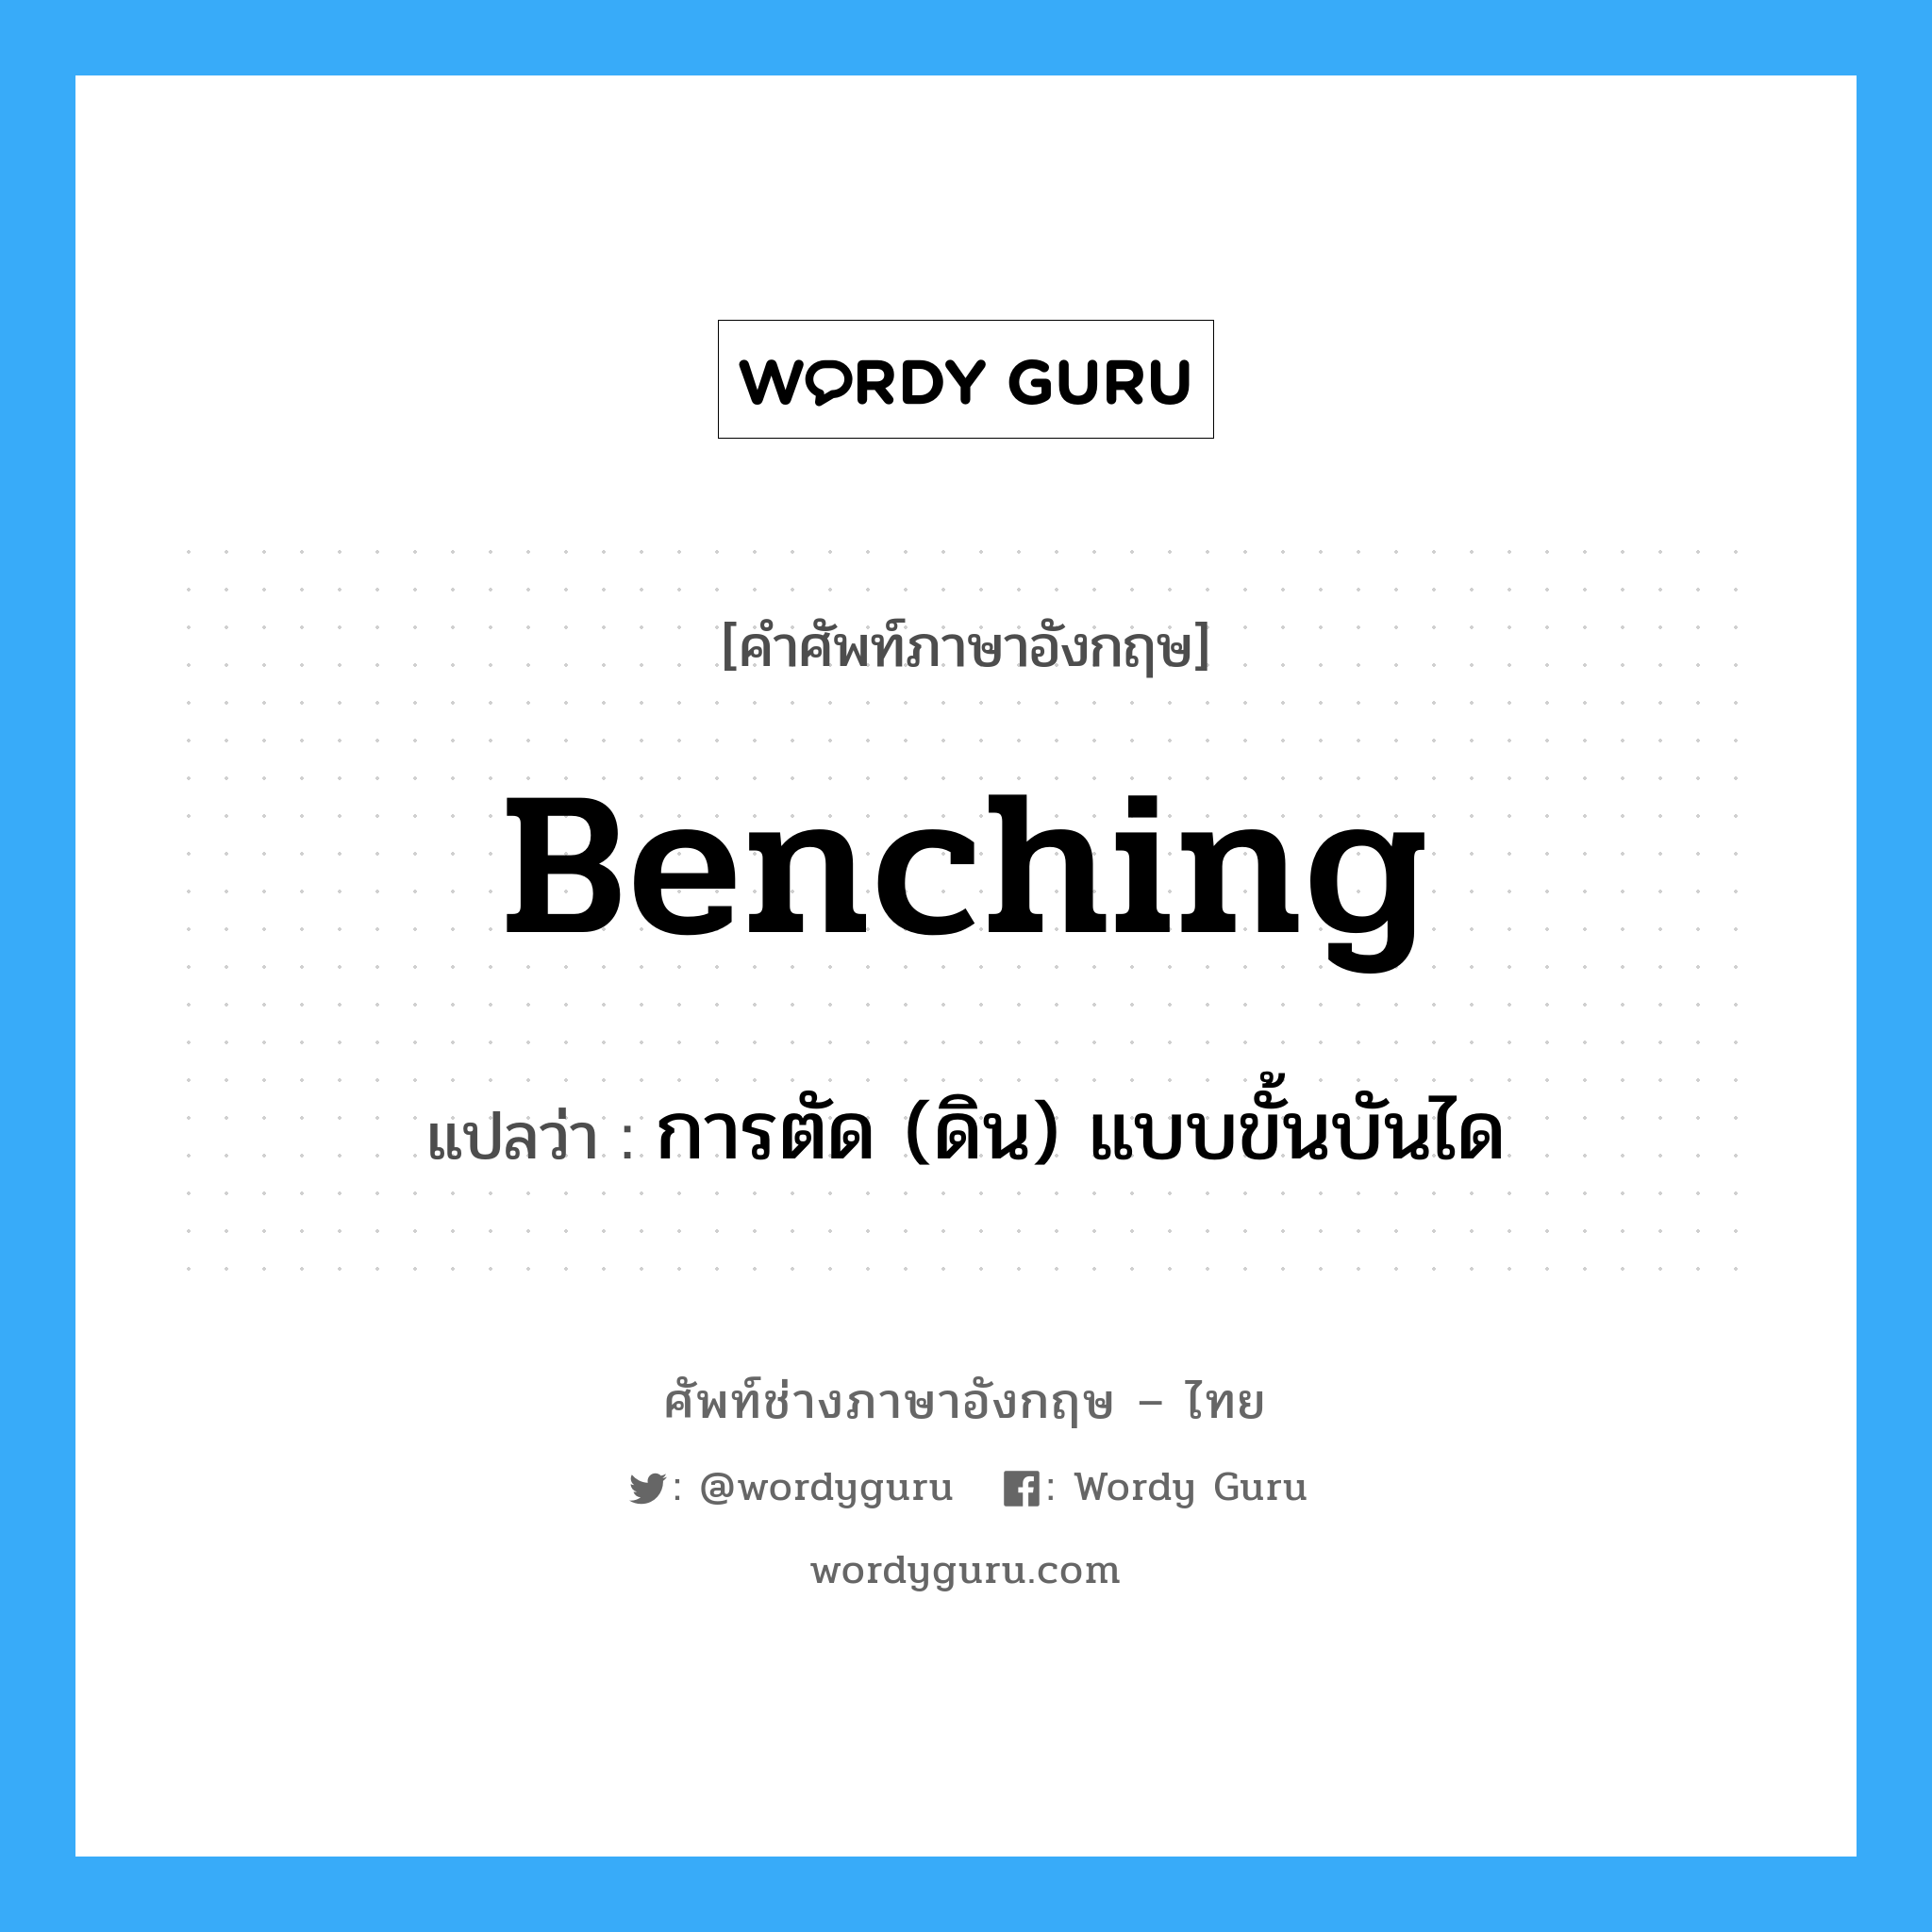 การตัด (ดิน) แบบขั้นบันได ภาษาอังกฤษ?, คำศัพท์ช่างภาษาอังกฤษ - ไทย การตัด (ดิน) แบบขั้นบันได คำศัพท์ภาษาอังกฤษ การตัด (ดิน) แบบขั้นบันได แปลว่า benching